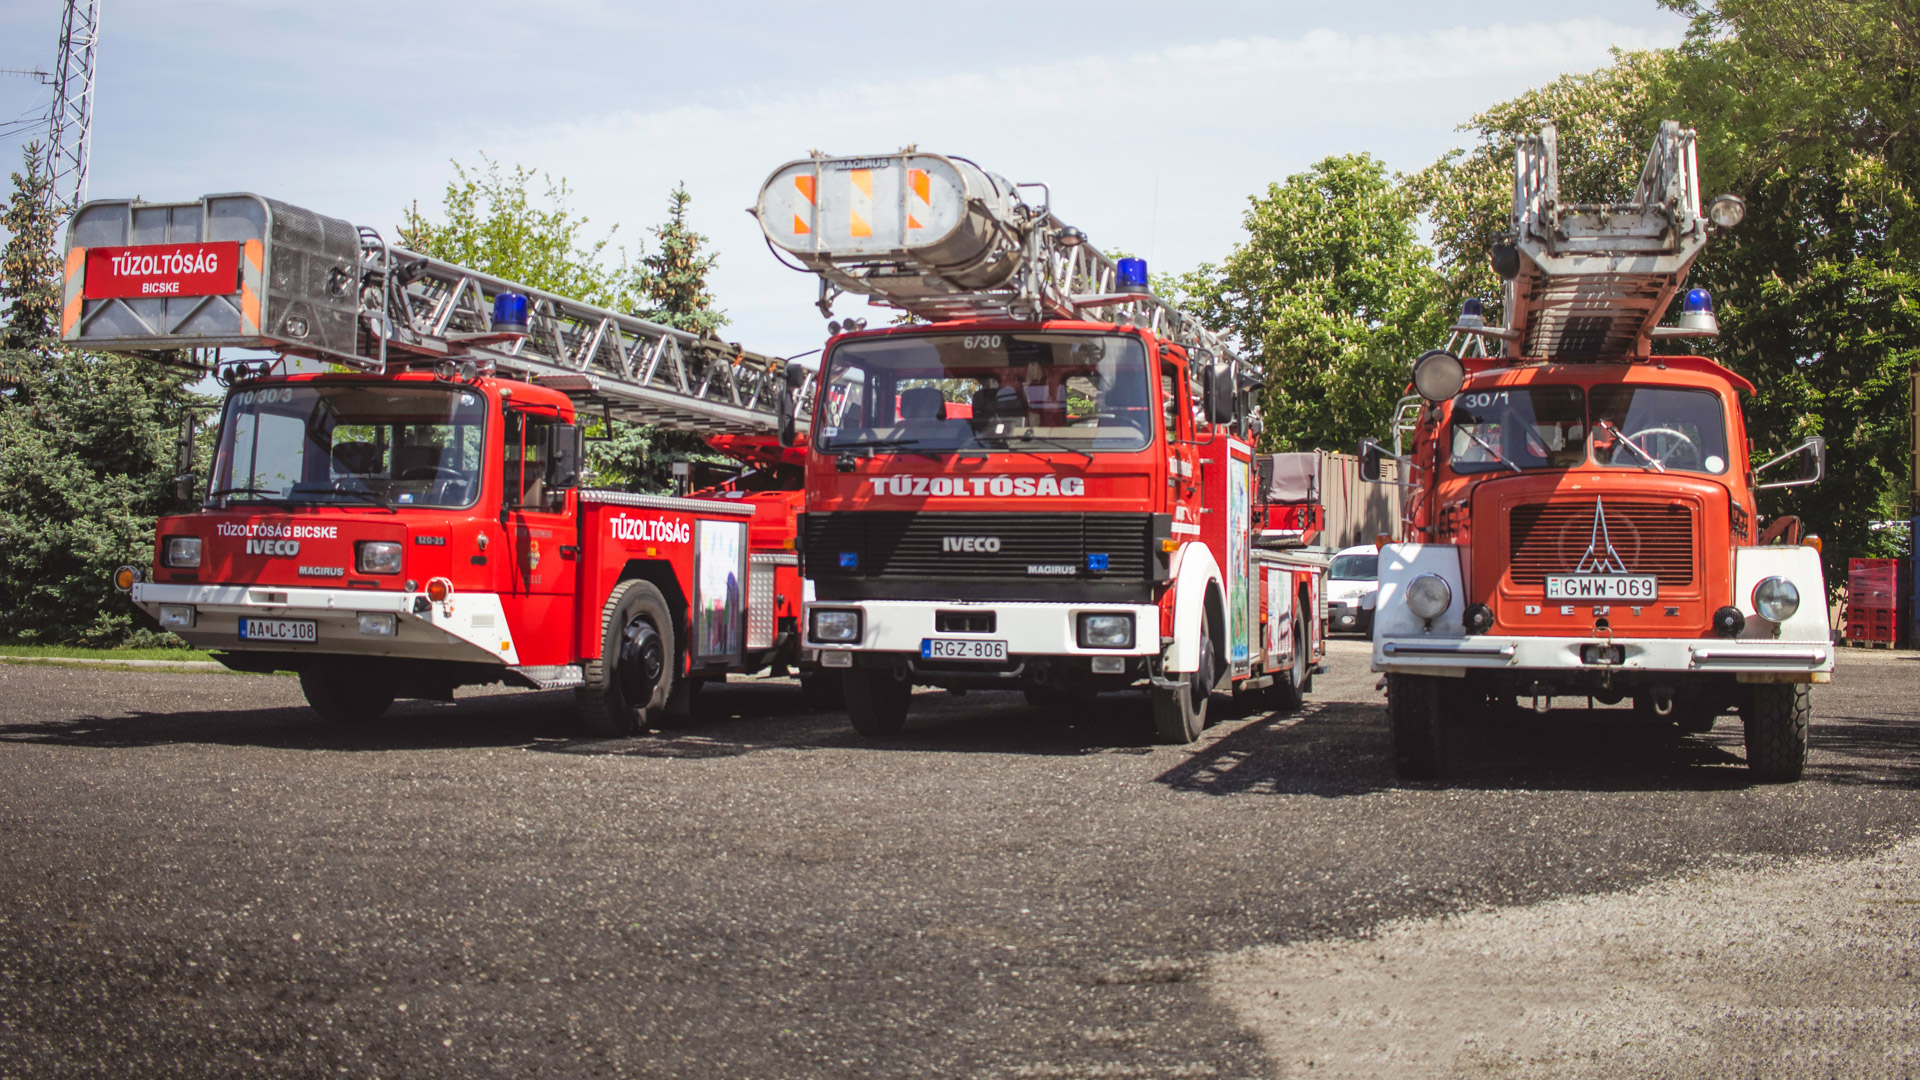 A Bicskei Önkéntes Tűzoltóság szerei: DLK járművek: Égimeszelők szertára